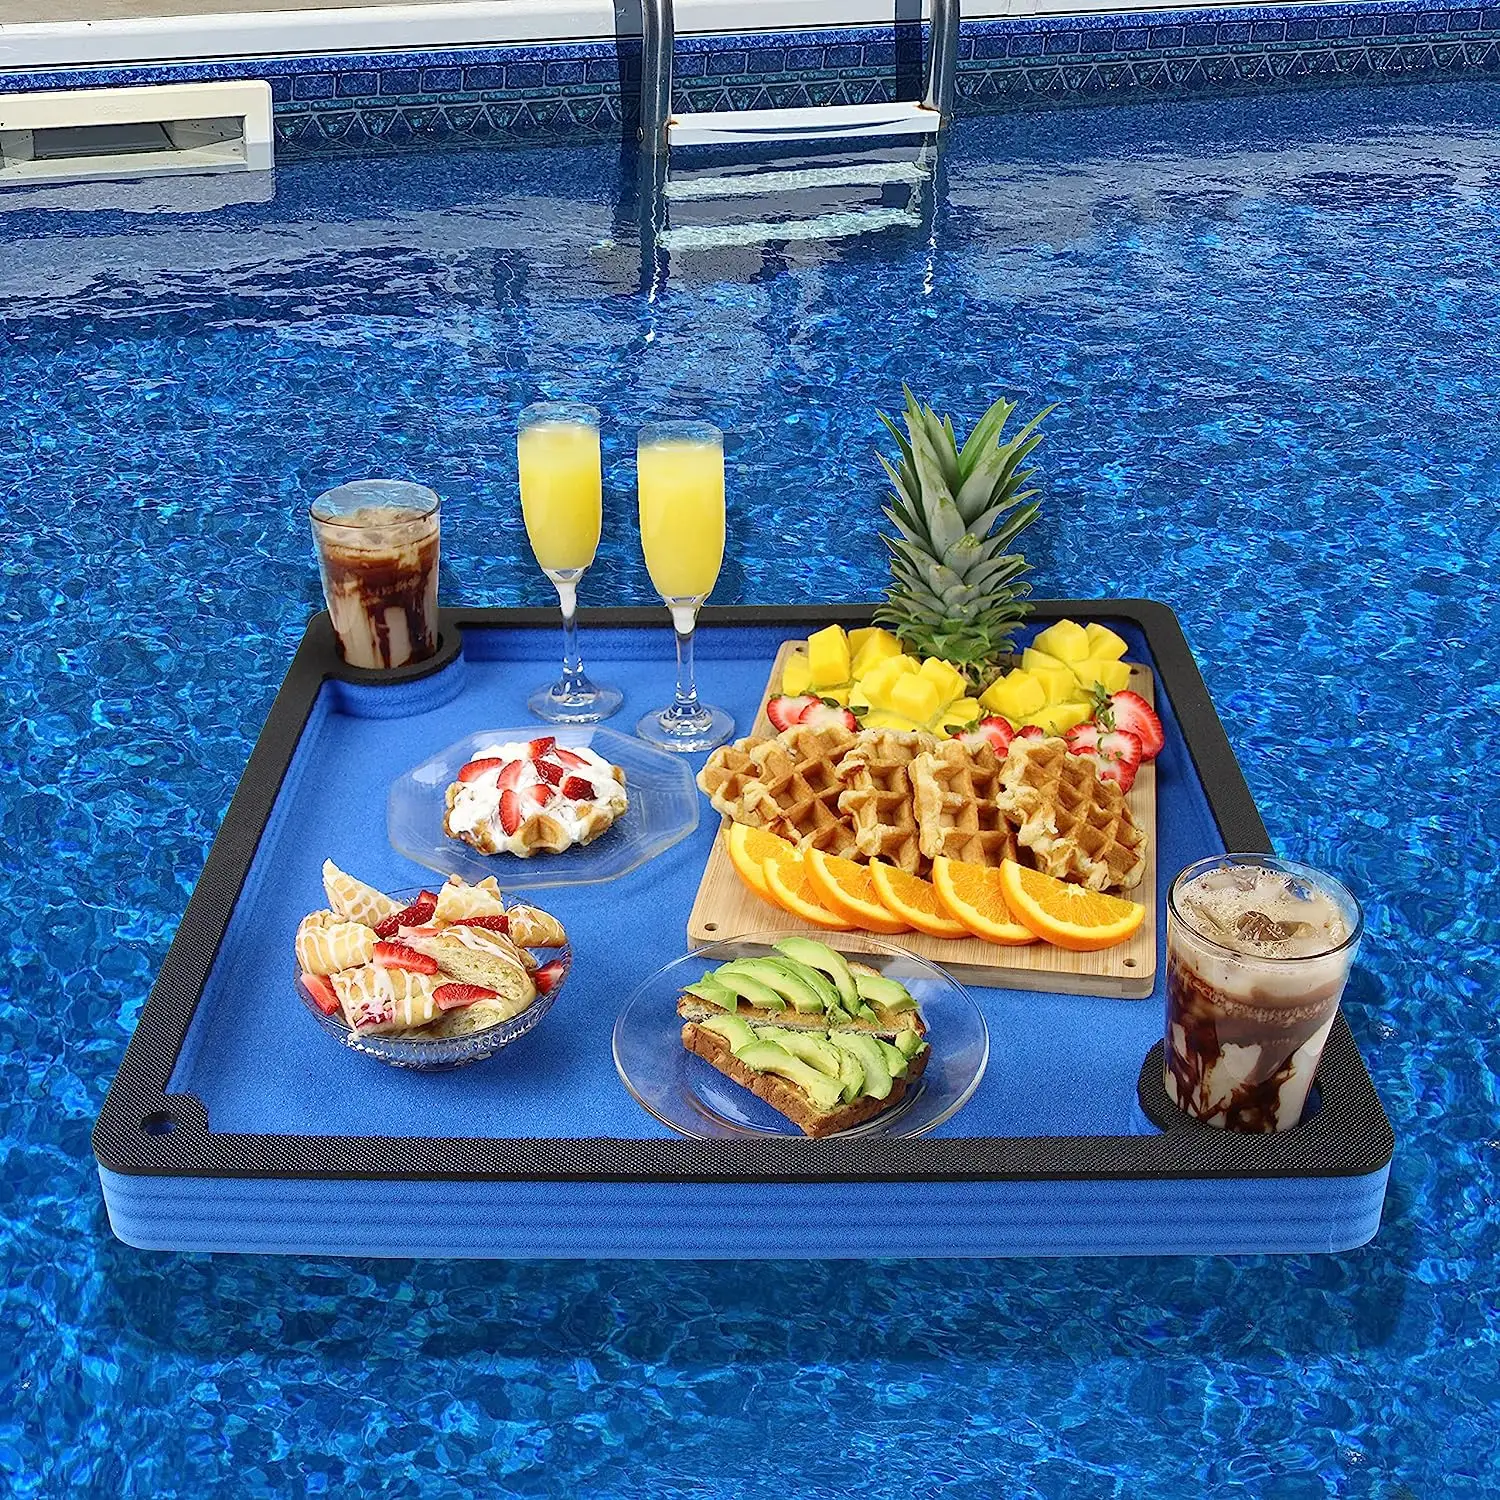 Soporte de bebida de mesa de tablero de ajedrez flotante para piscina o fiesta en la playa flotador salón refresco espuma duradera